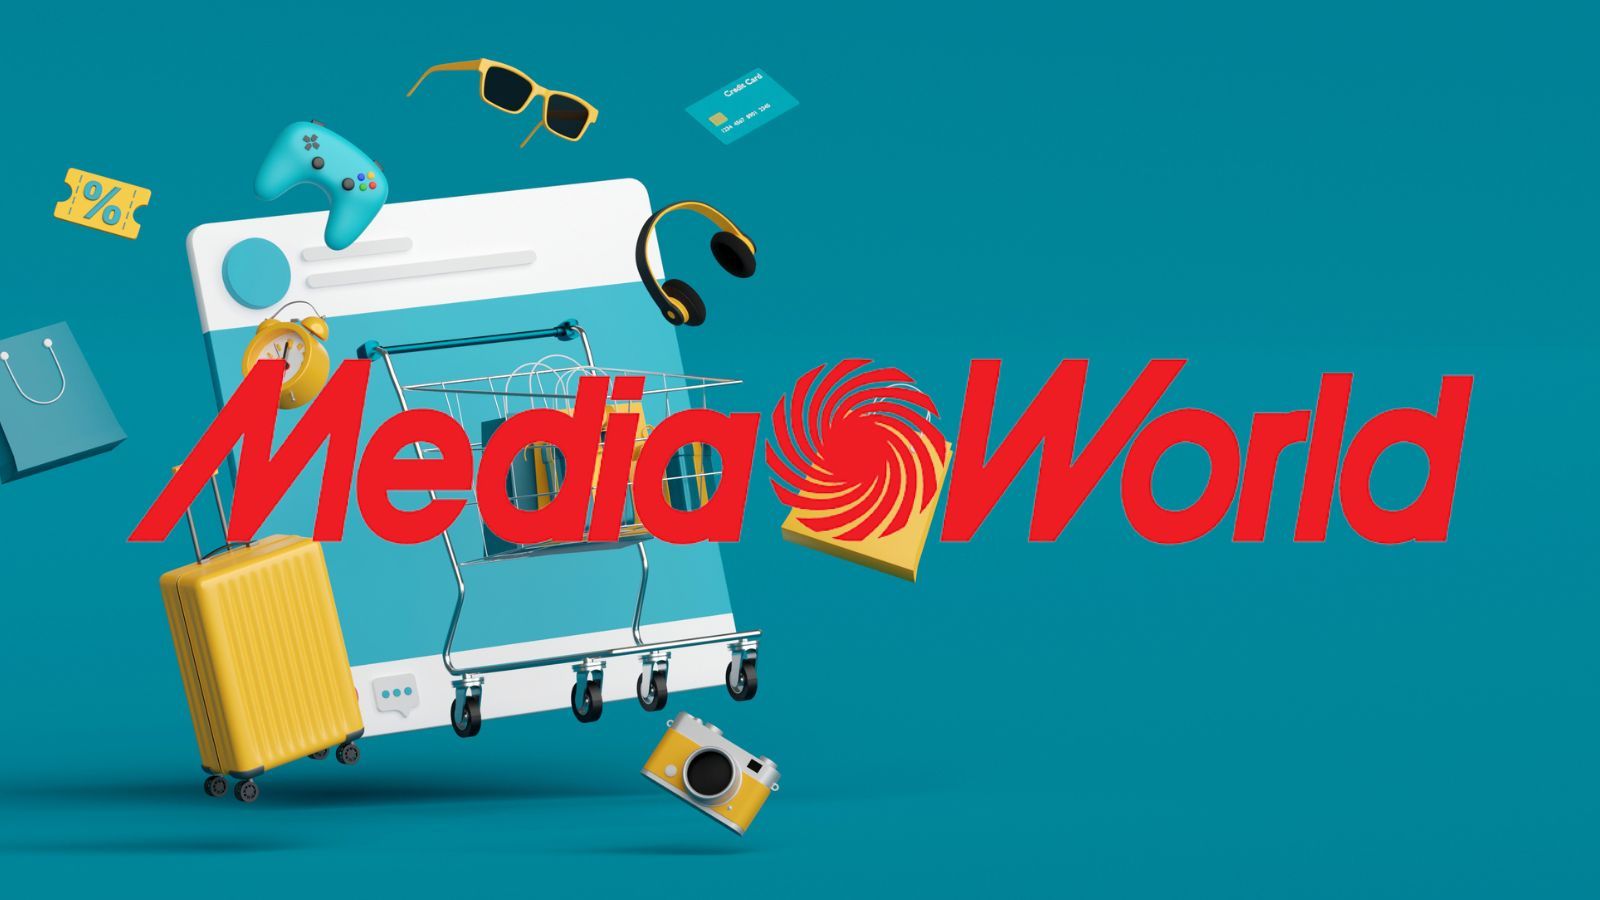 MediaWorld, volantino con offerte al 90% di sconto solo oggi